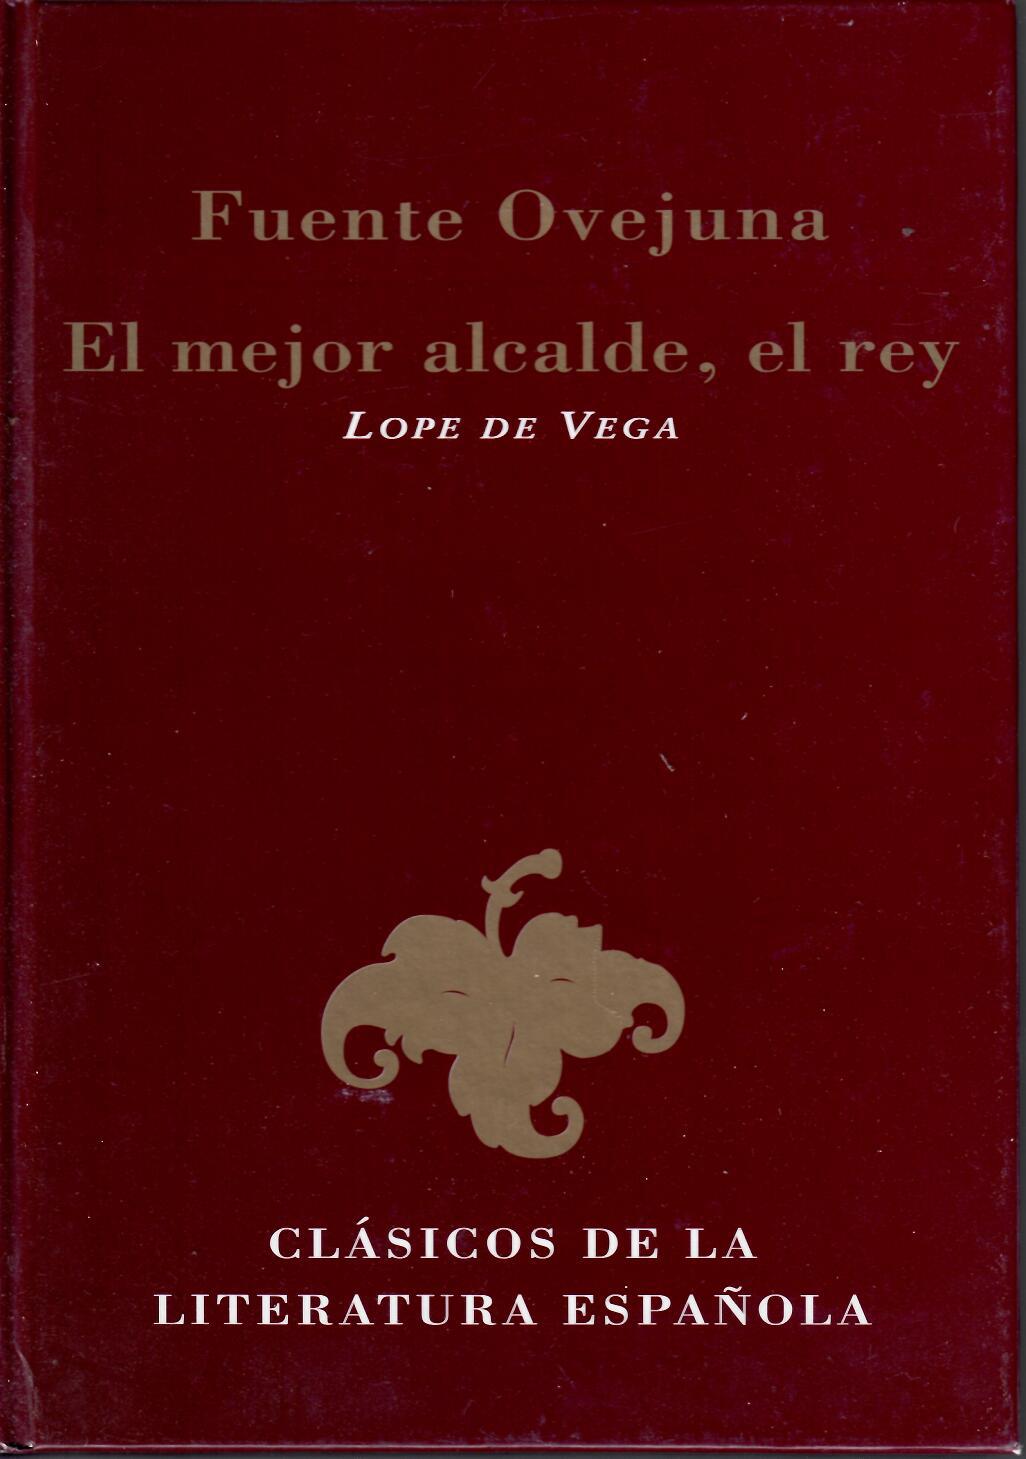 Fuente Ovejuna - El mejor alcalde, el rey. Lope de Vega. Clásicos de la Literatura Española. 2001 Ediciones Rueda